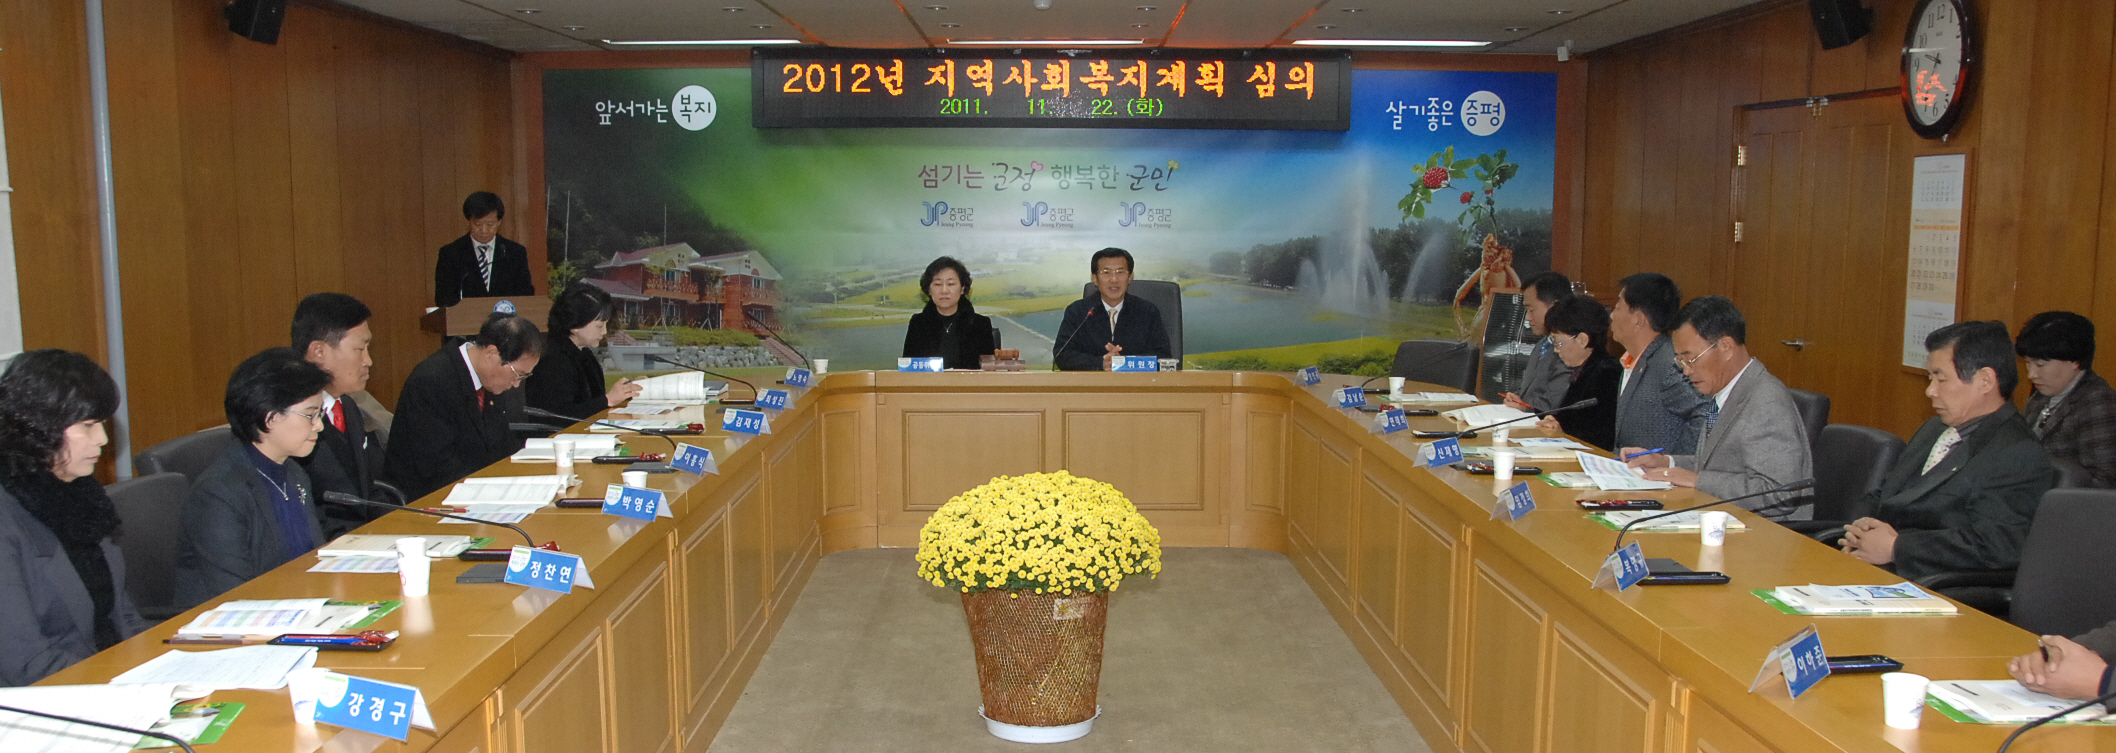 2012년 지역사회복지 연차별 시행계획 심의회 개최